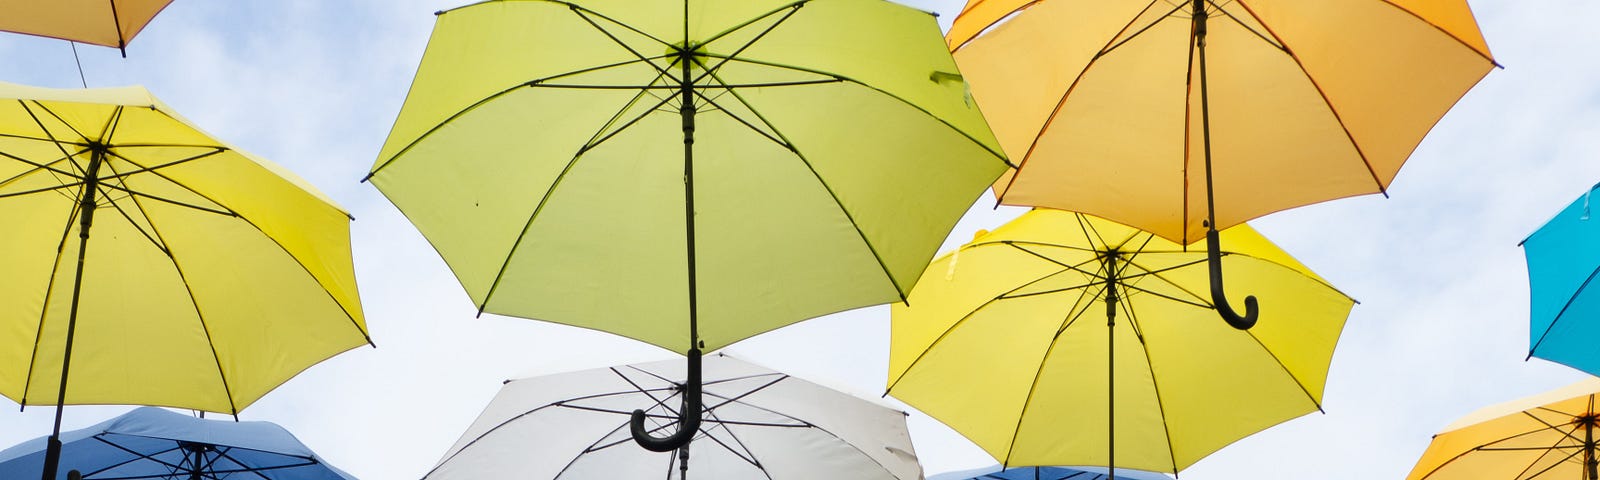 umbrellas against a sky